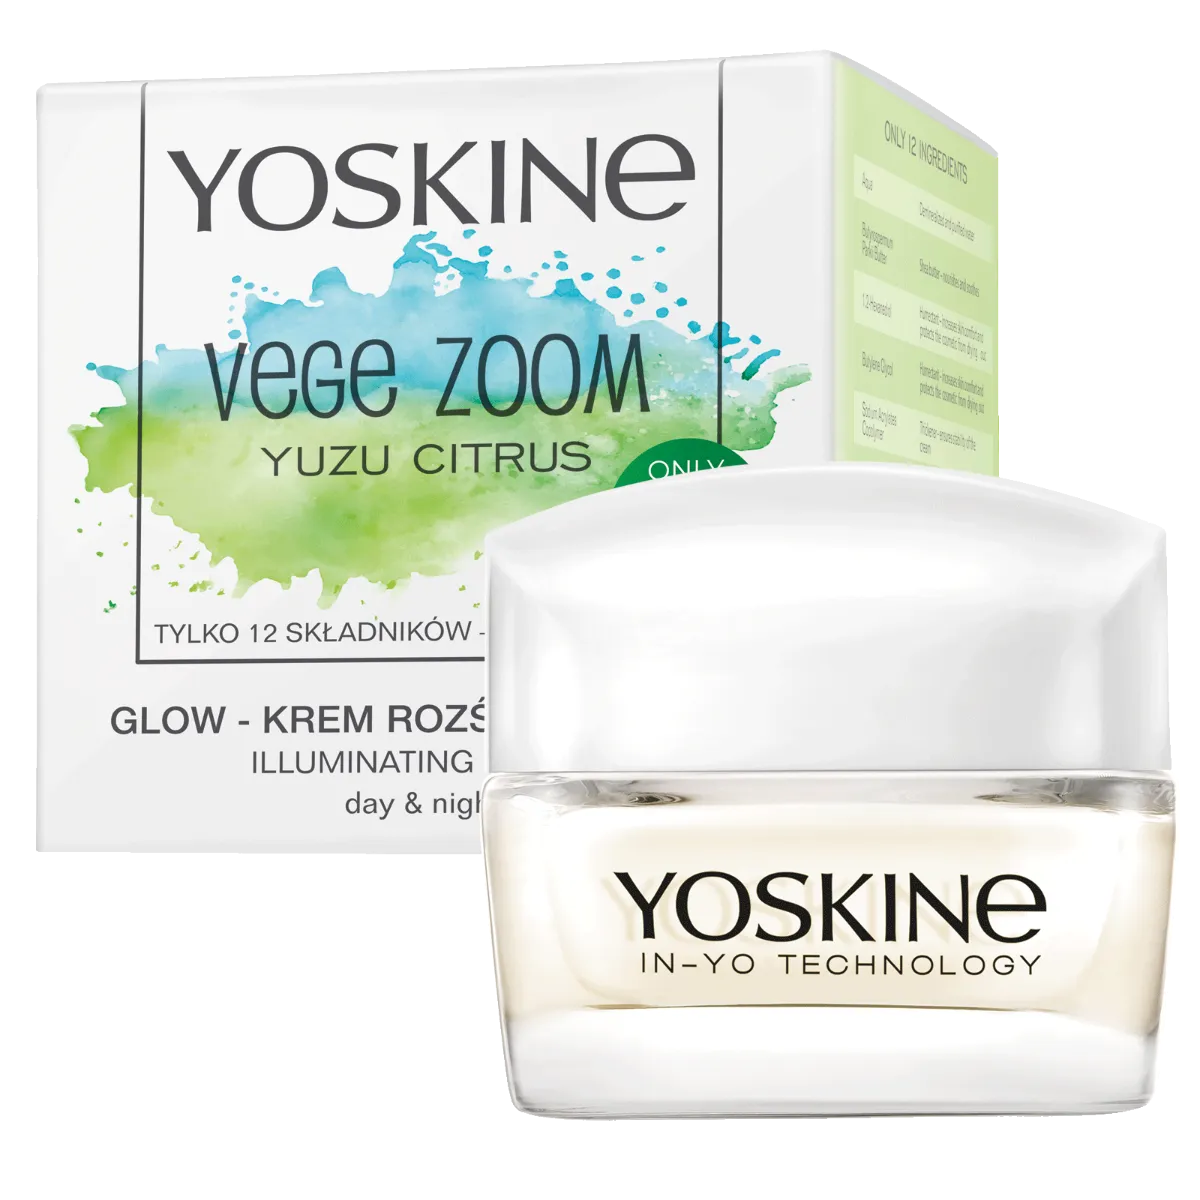 Yoskine Vege Zoom krem rozświetlający Yuzu Citrus, 50 ml